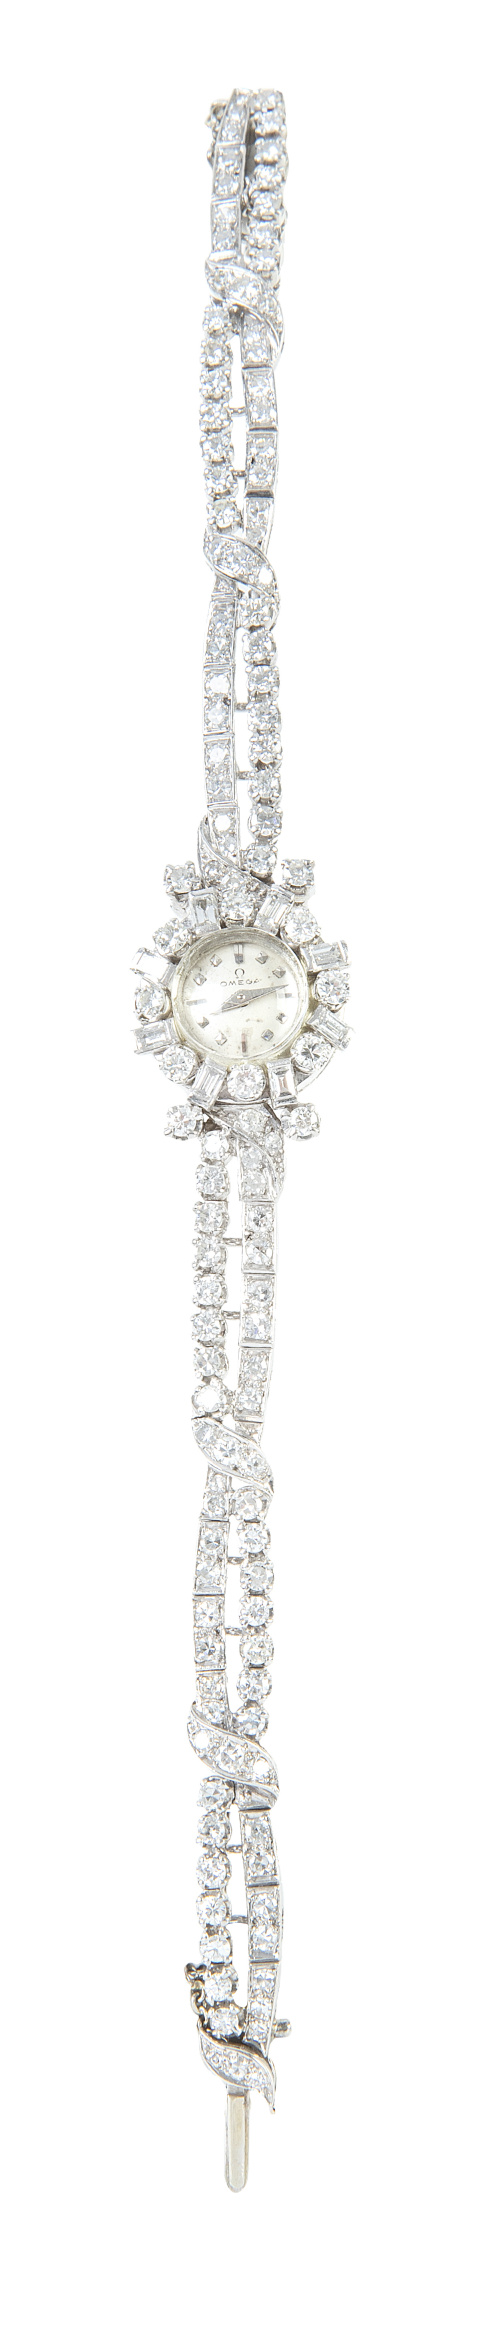 Reloj de pulsera de brillantes OMEGA para señora años 60